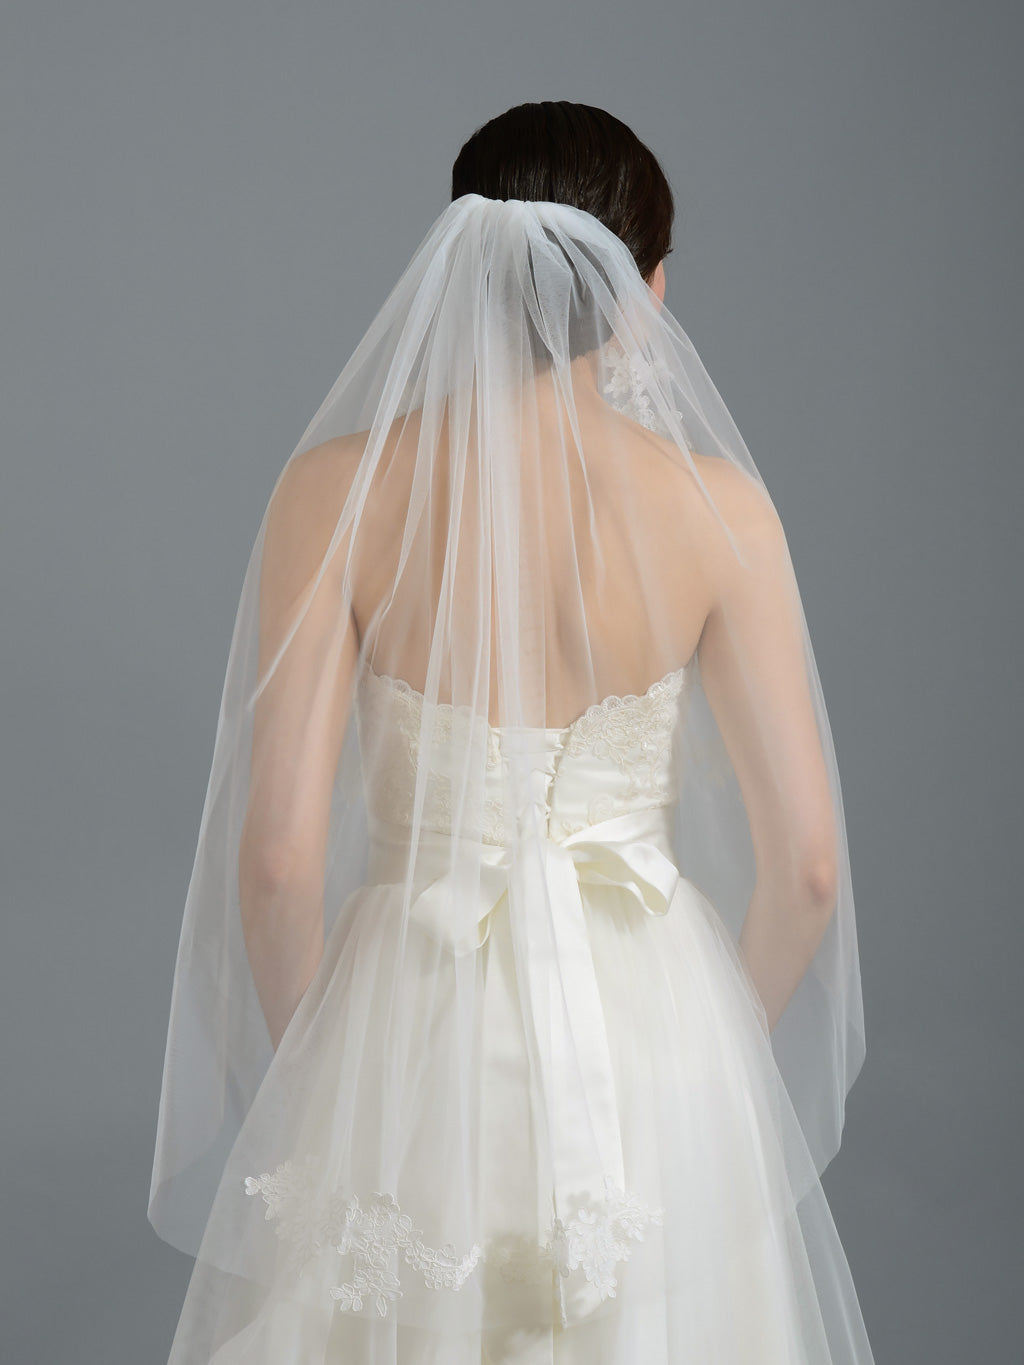 Ivory elbow wedding veil V052n alencon lace